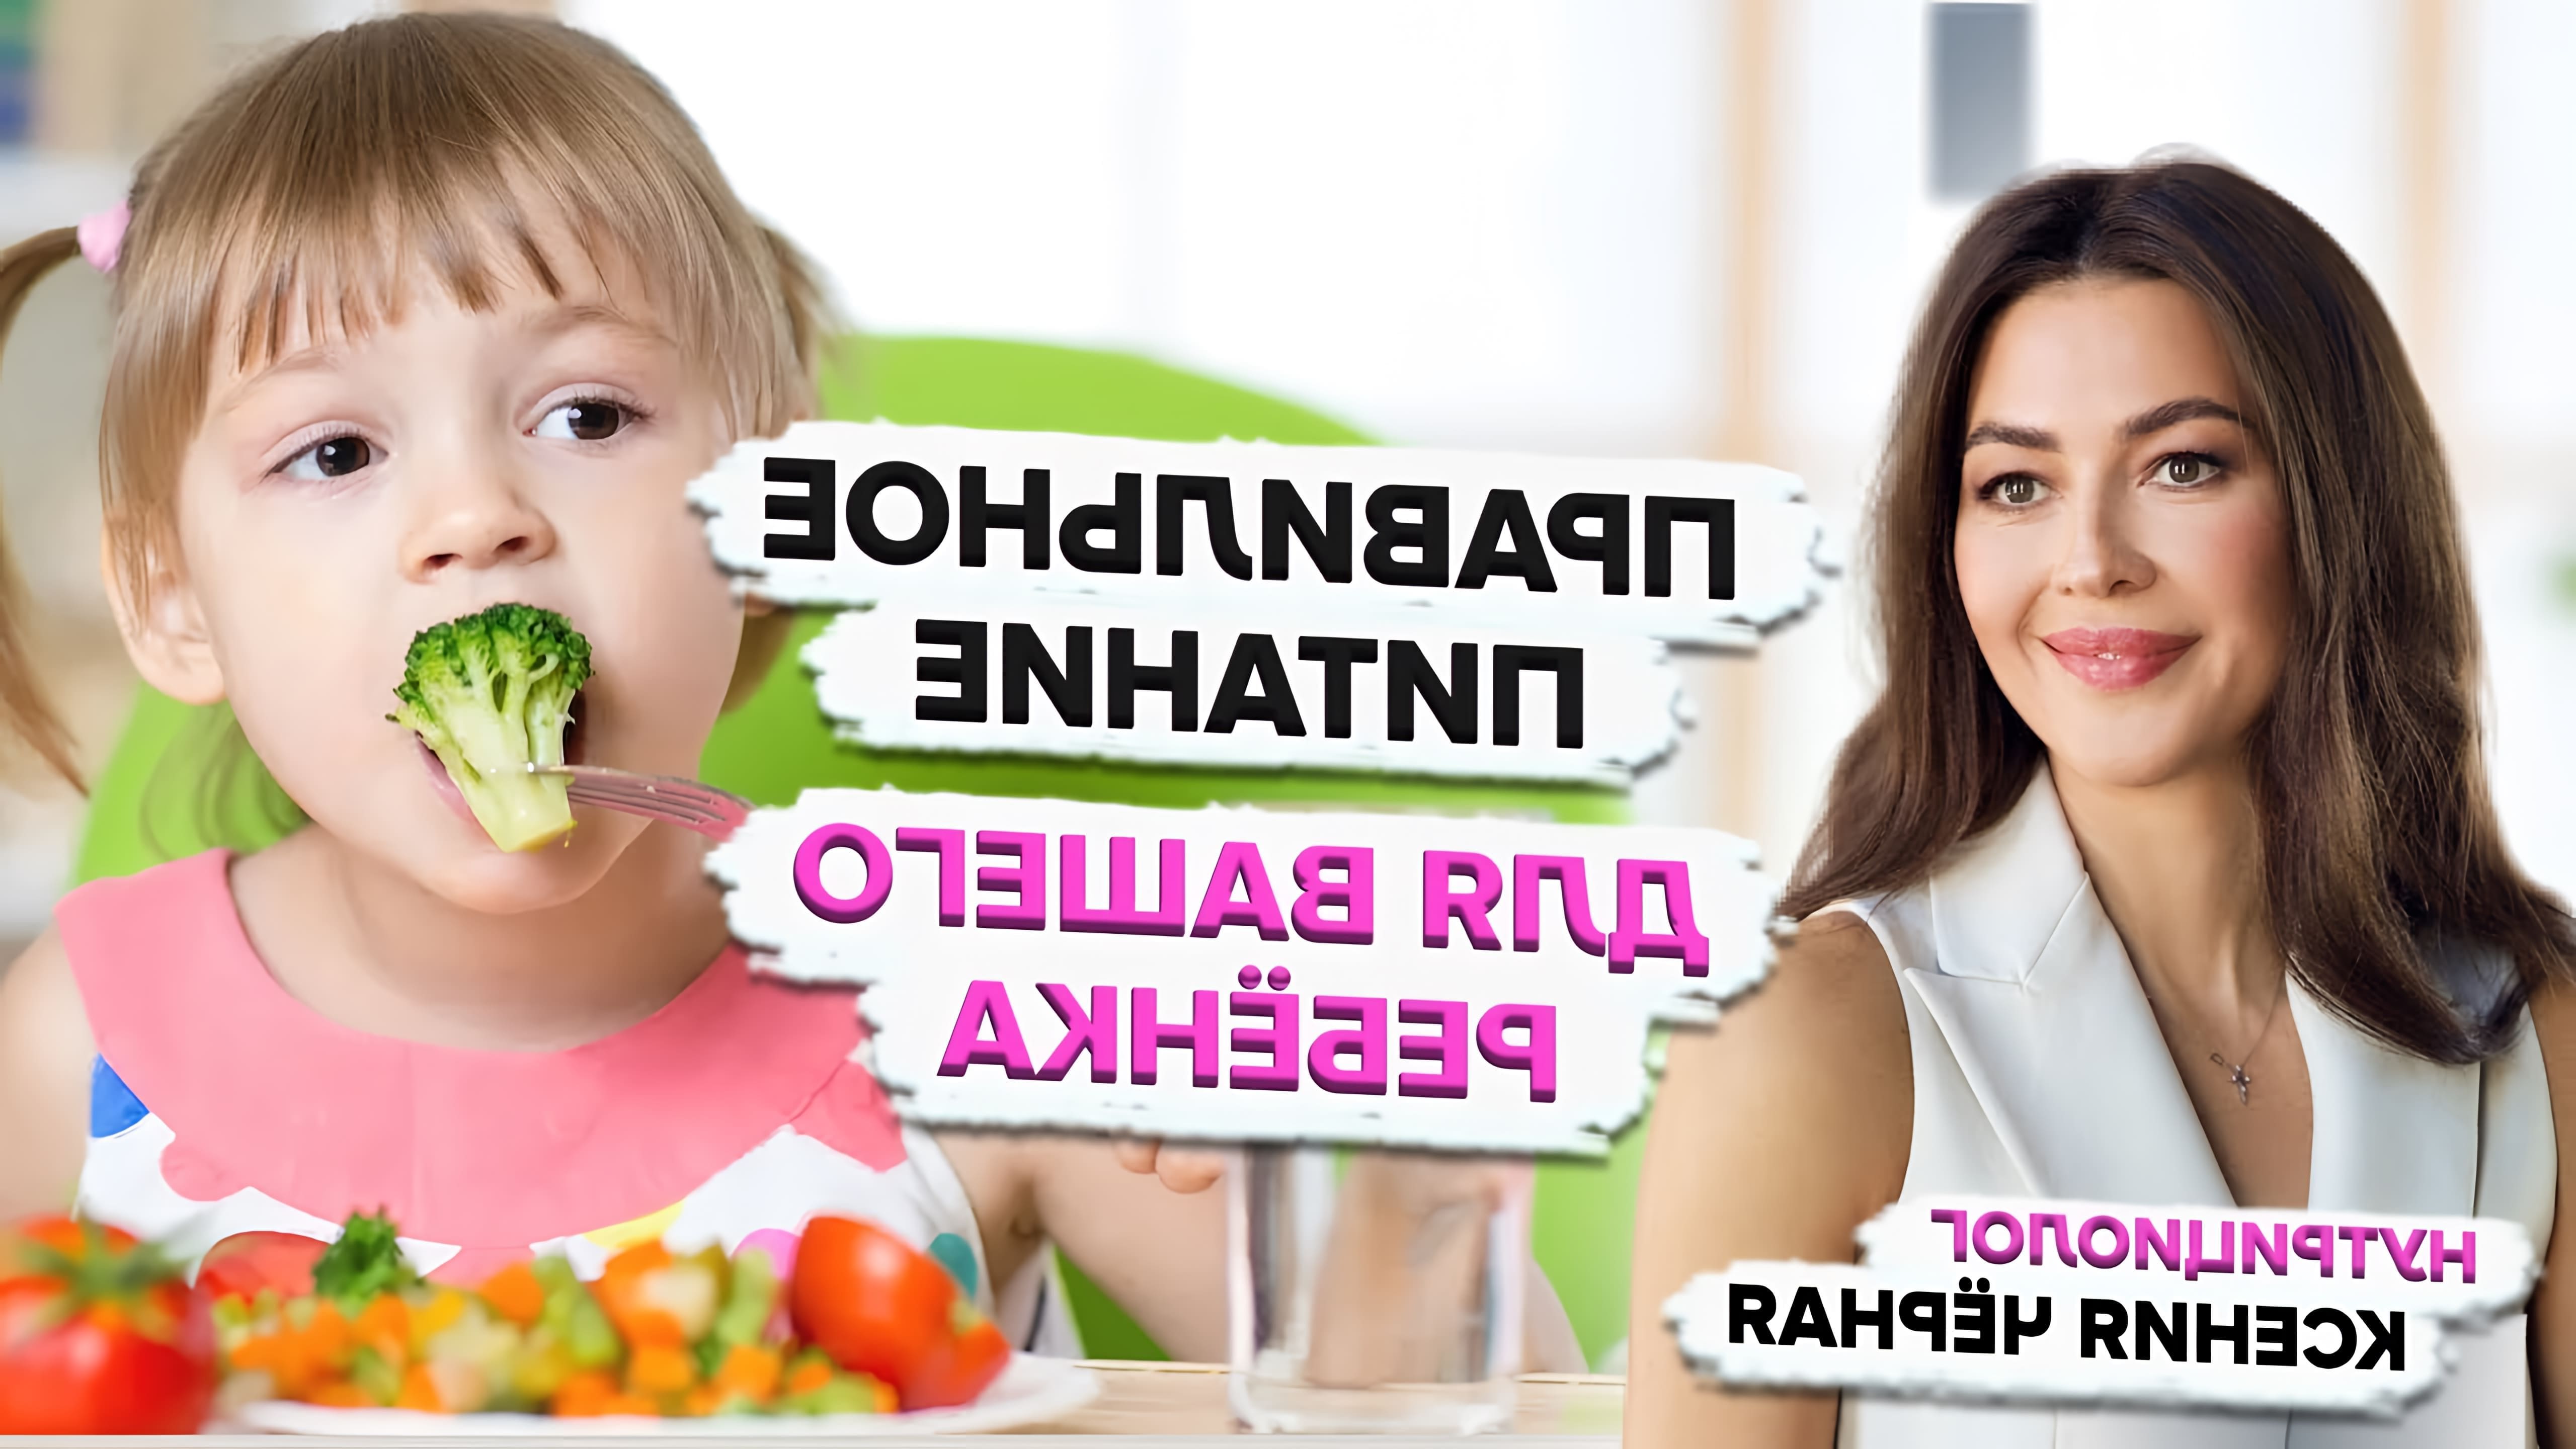 В этом видео-ролике рассказывается о правильном питании для детей, а также о том, что делать, если ребенок не ест овощи